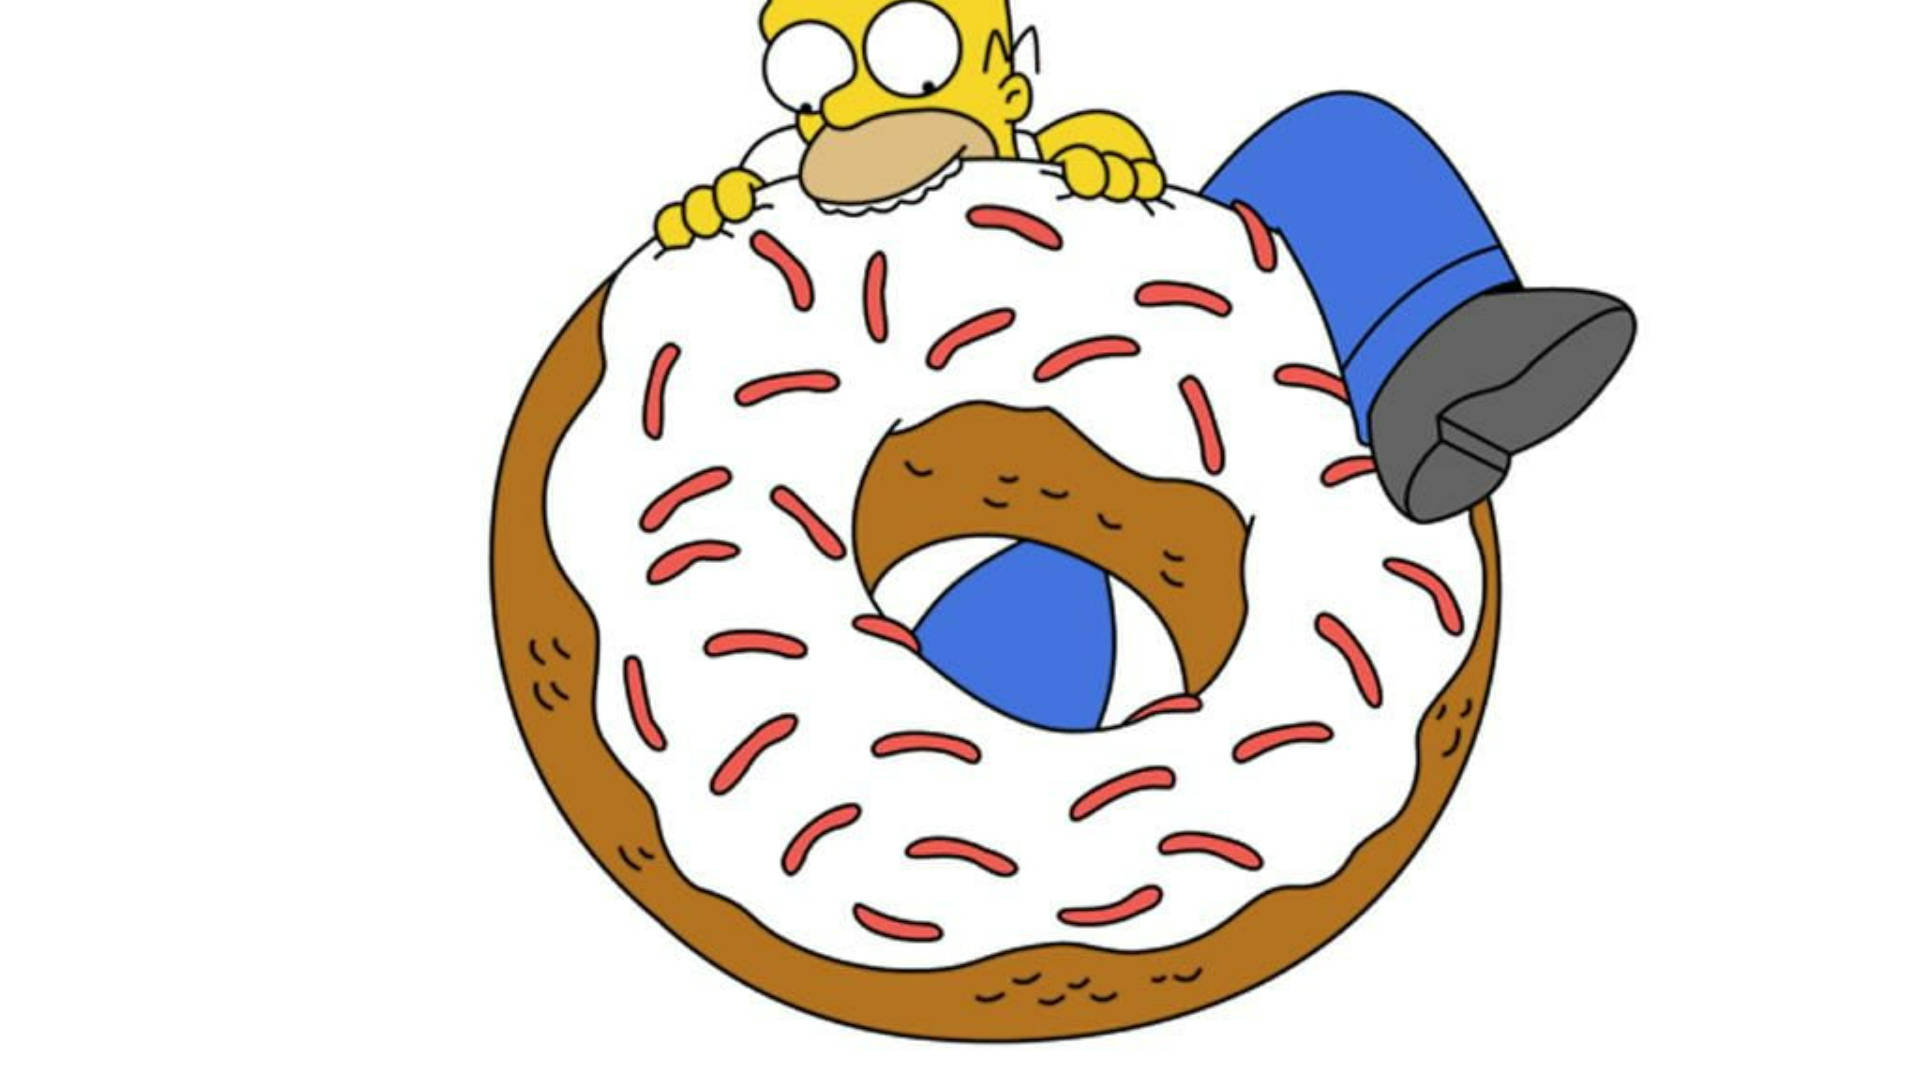 Diesimpsons-film: Homer Auf Einem Donut Wallpaper